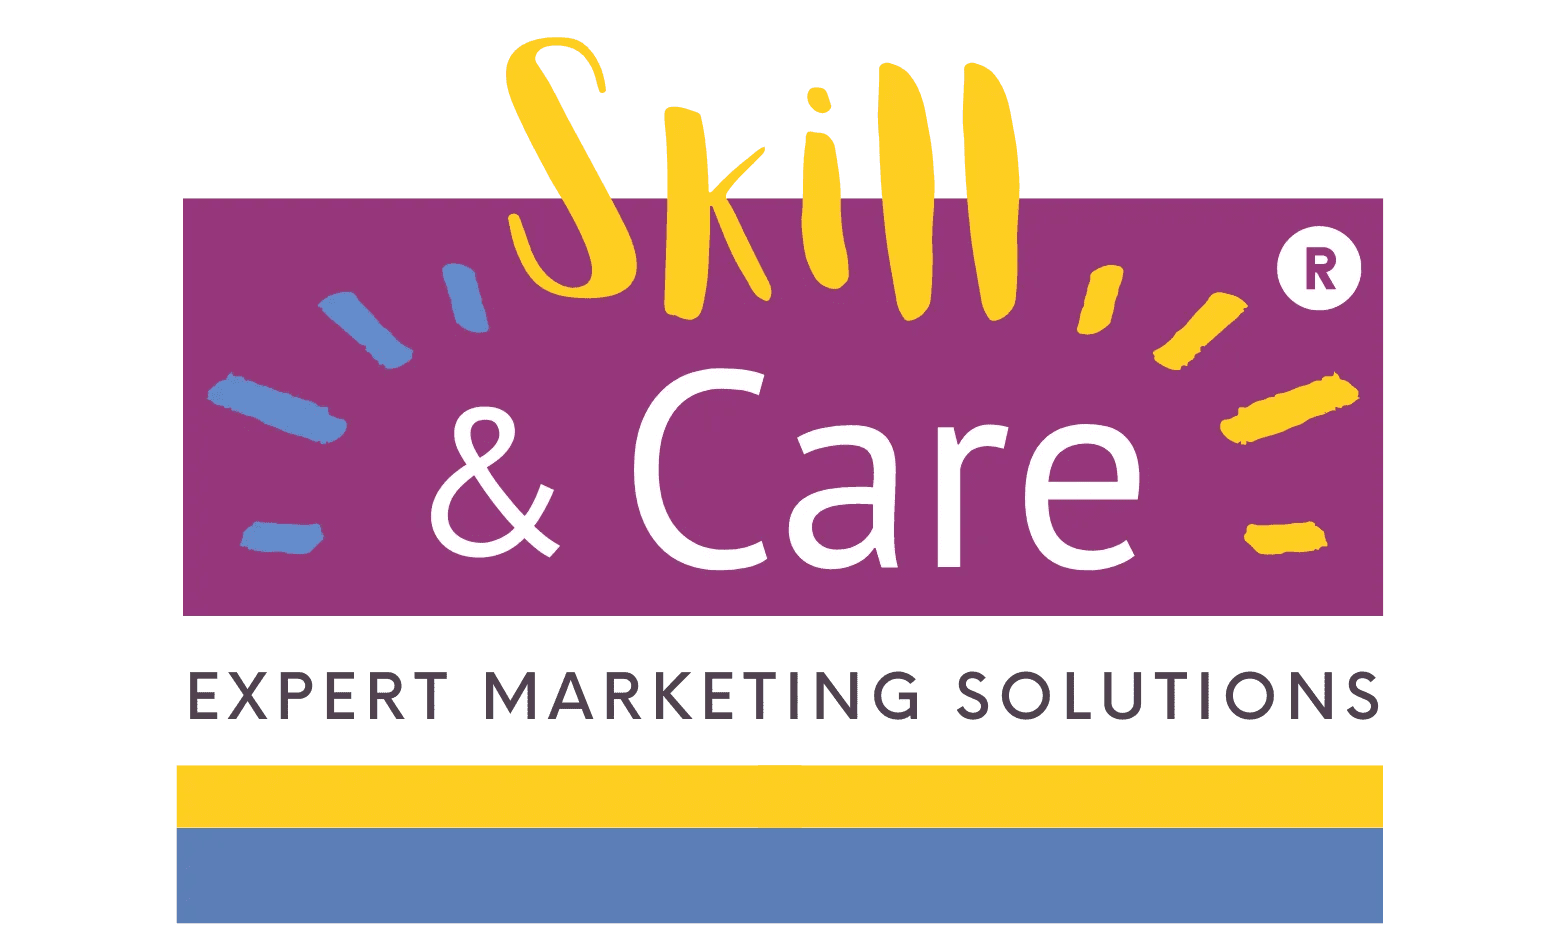 Skill & Care